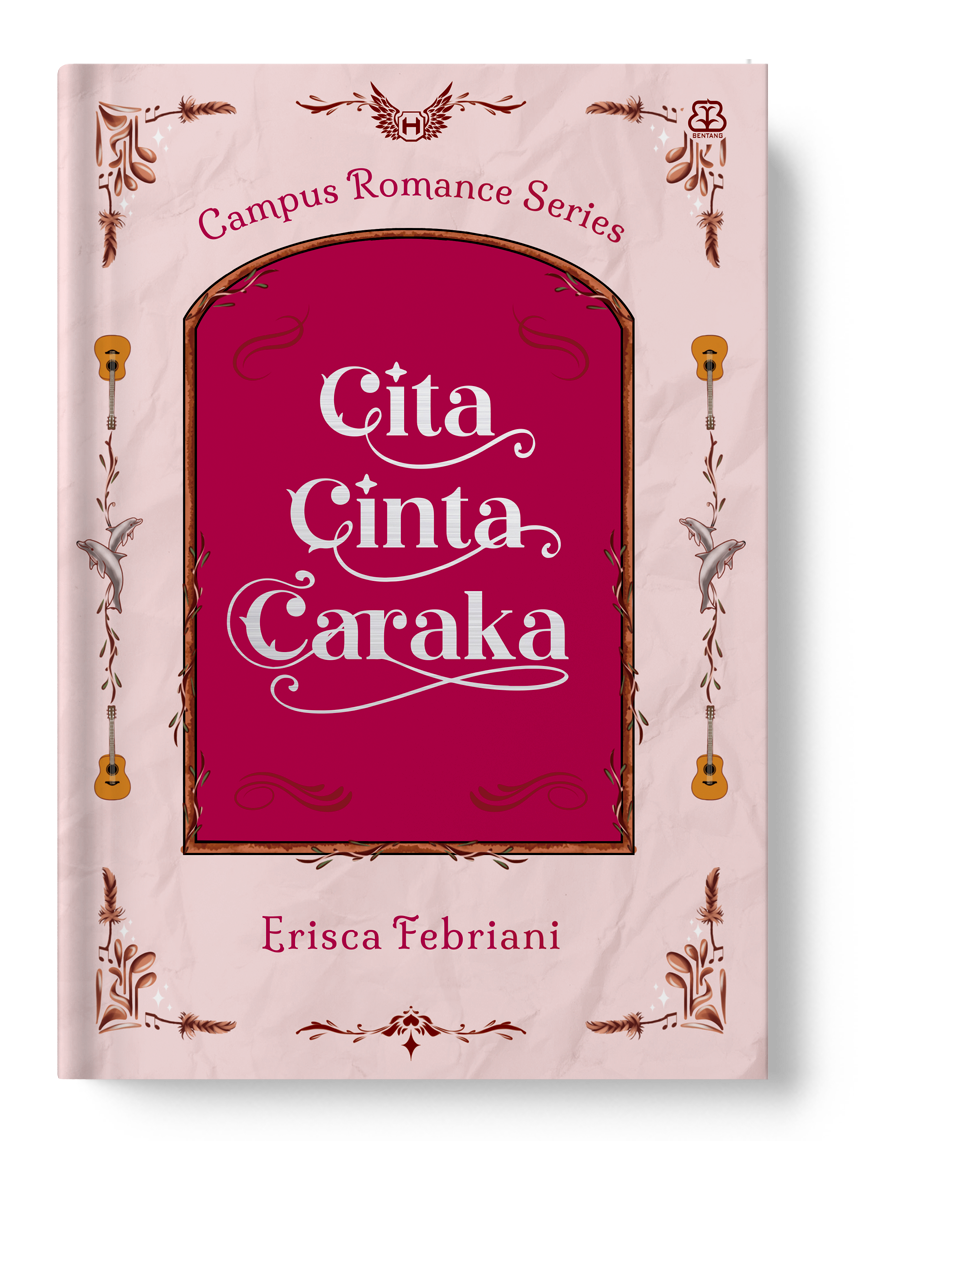 CAMPUS ROMANCE SERIES: CITA CINTA CARAKA